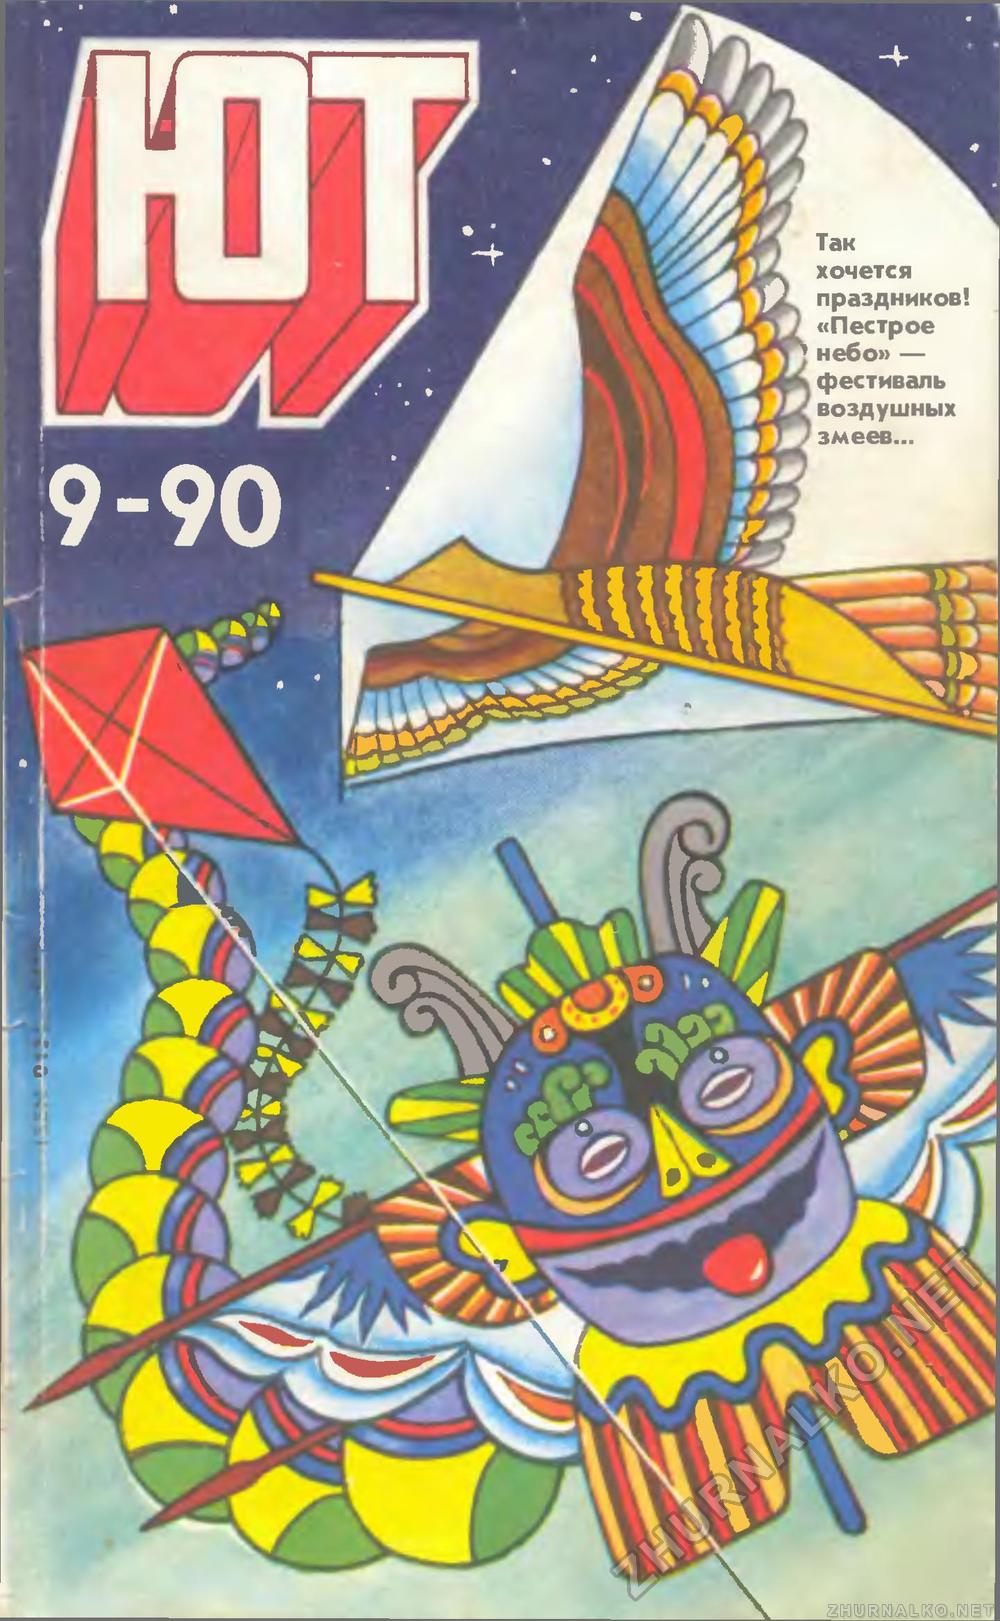   1990-09,  1